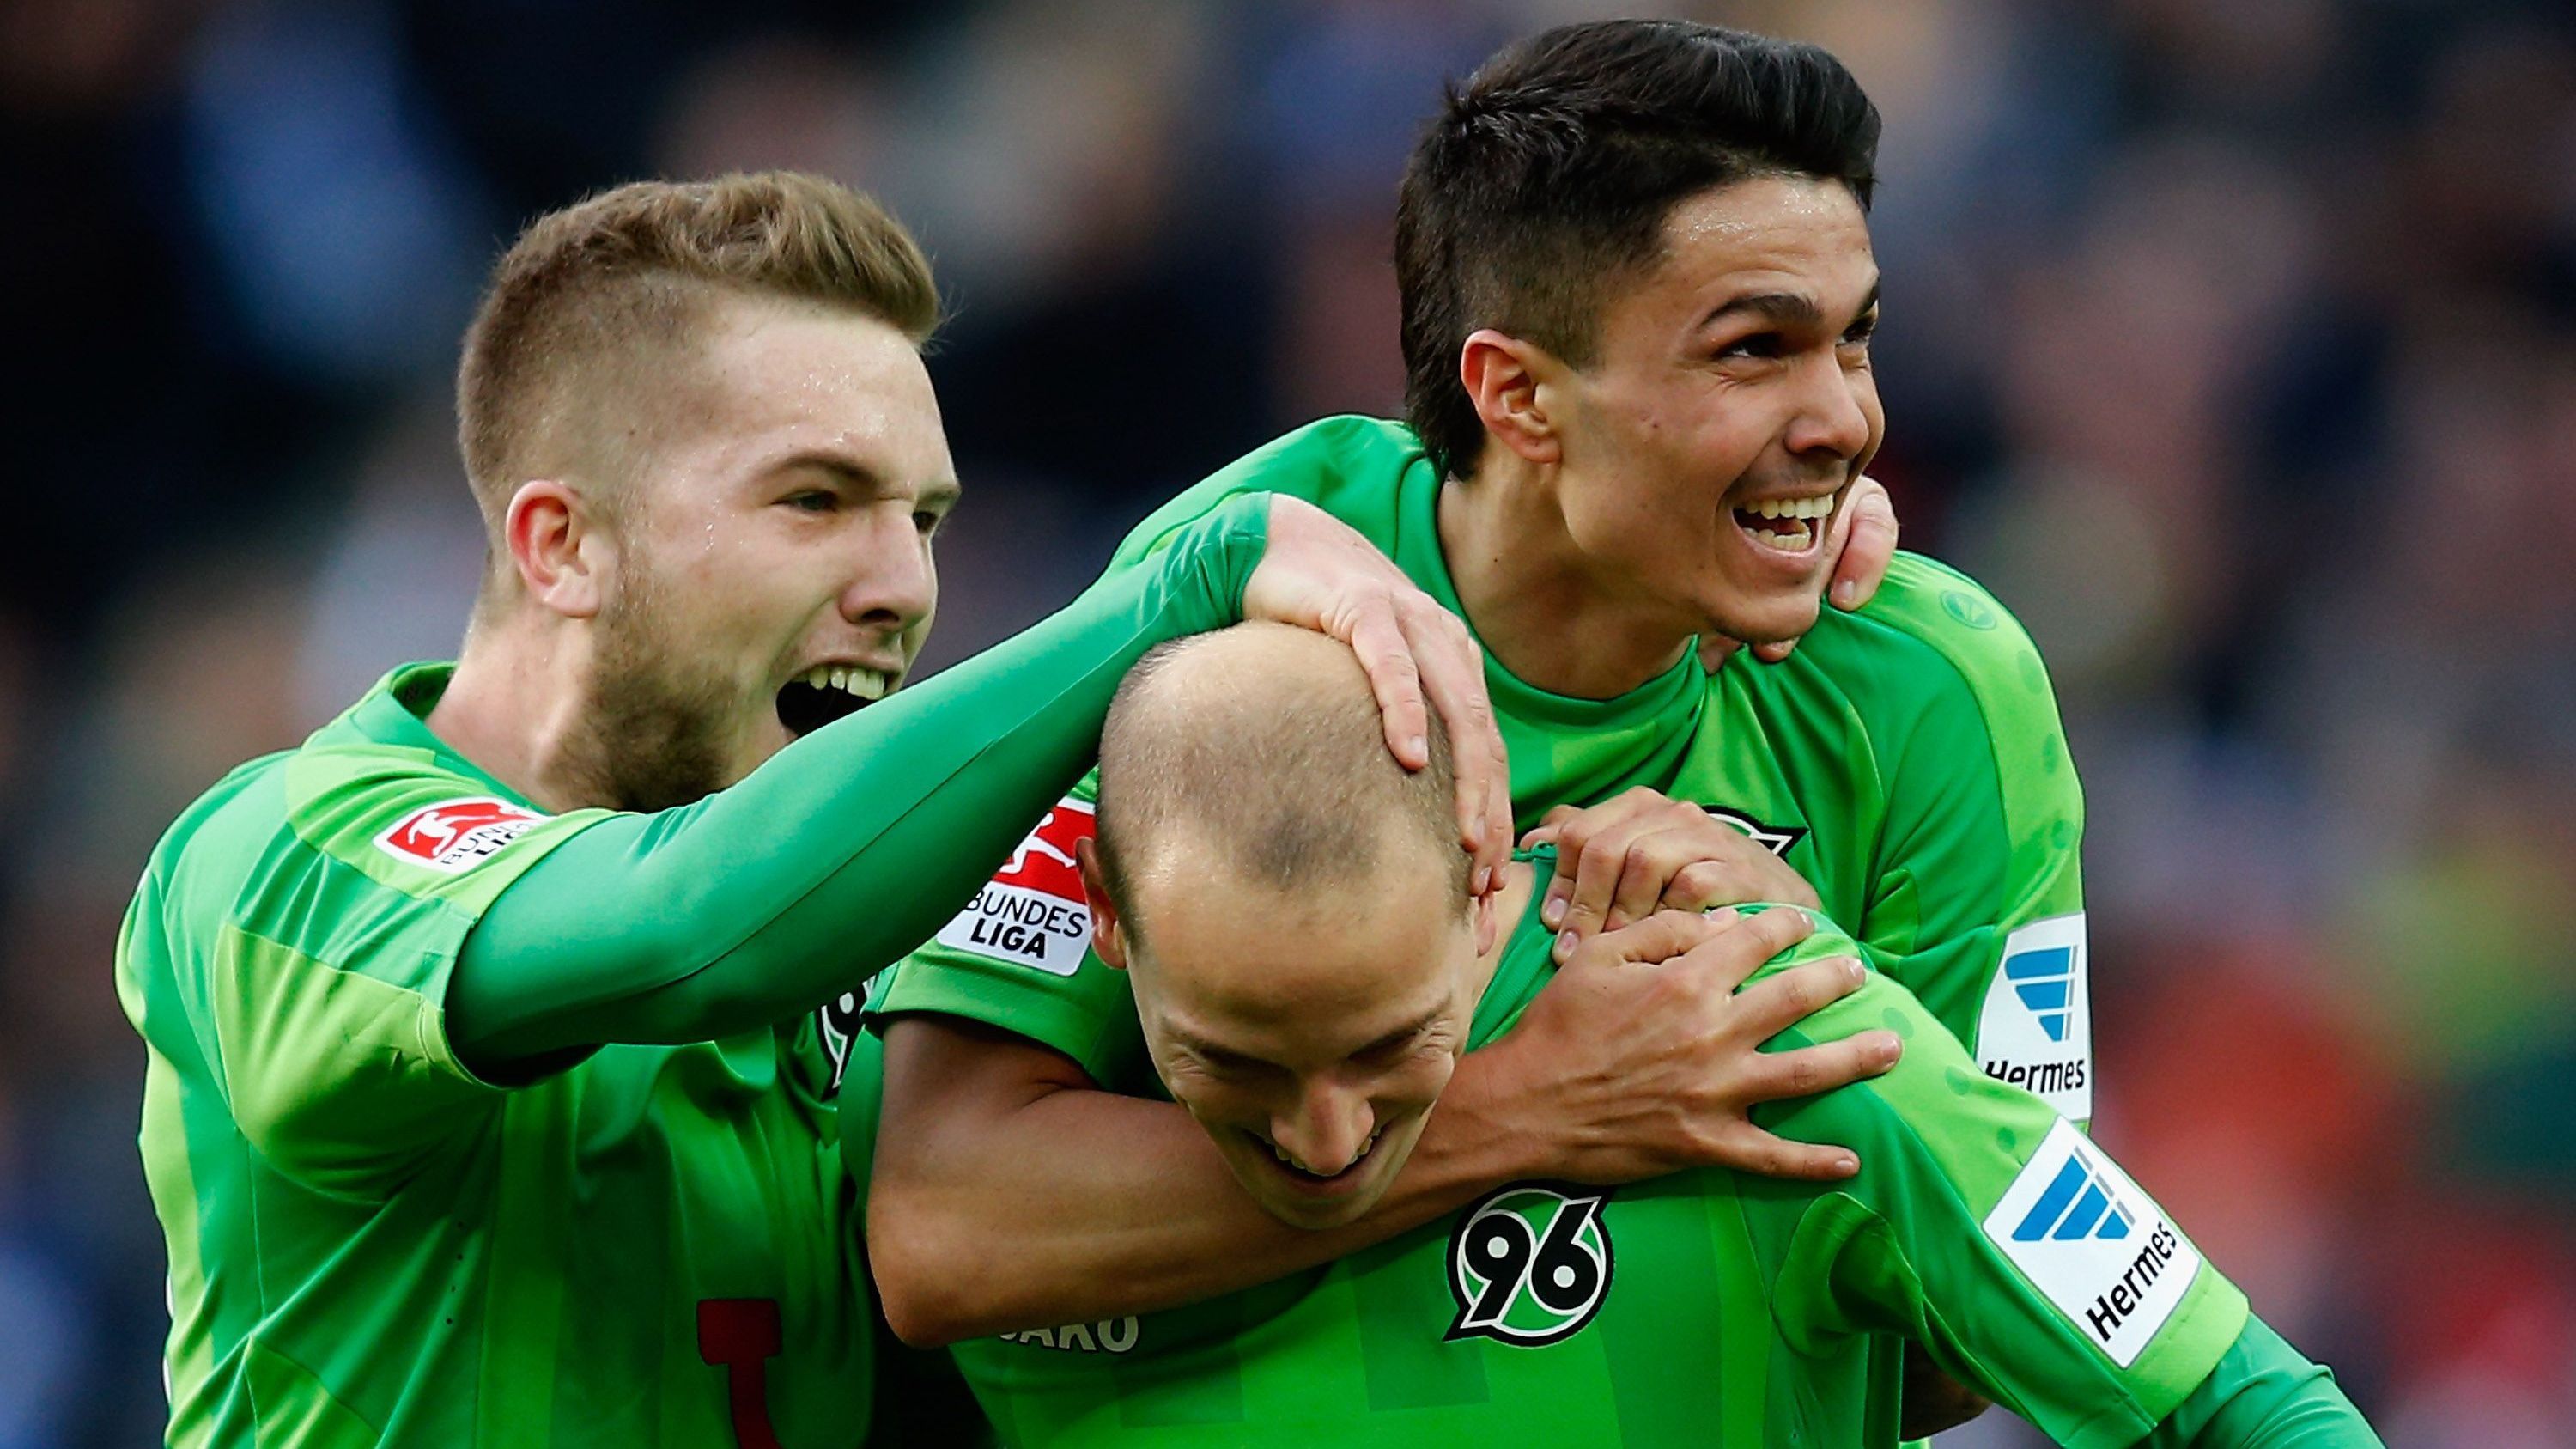 <strong>Platz 5 (geteilt): Niedersachsen - 3 Vereine</strong><br>Hannover 96 (Foto, 30)<br>VfL Wolfsburg (28)<br>Eintracht Braunschweig (21)